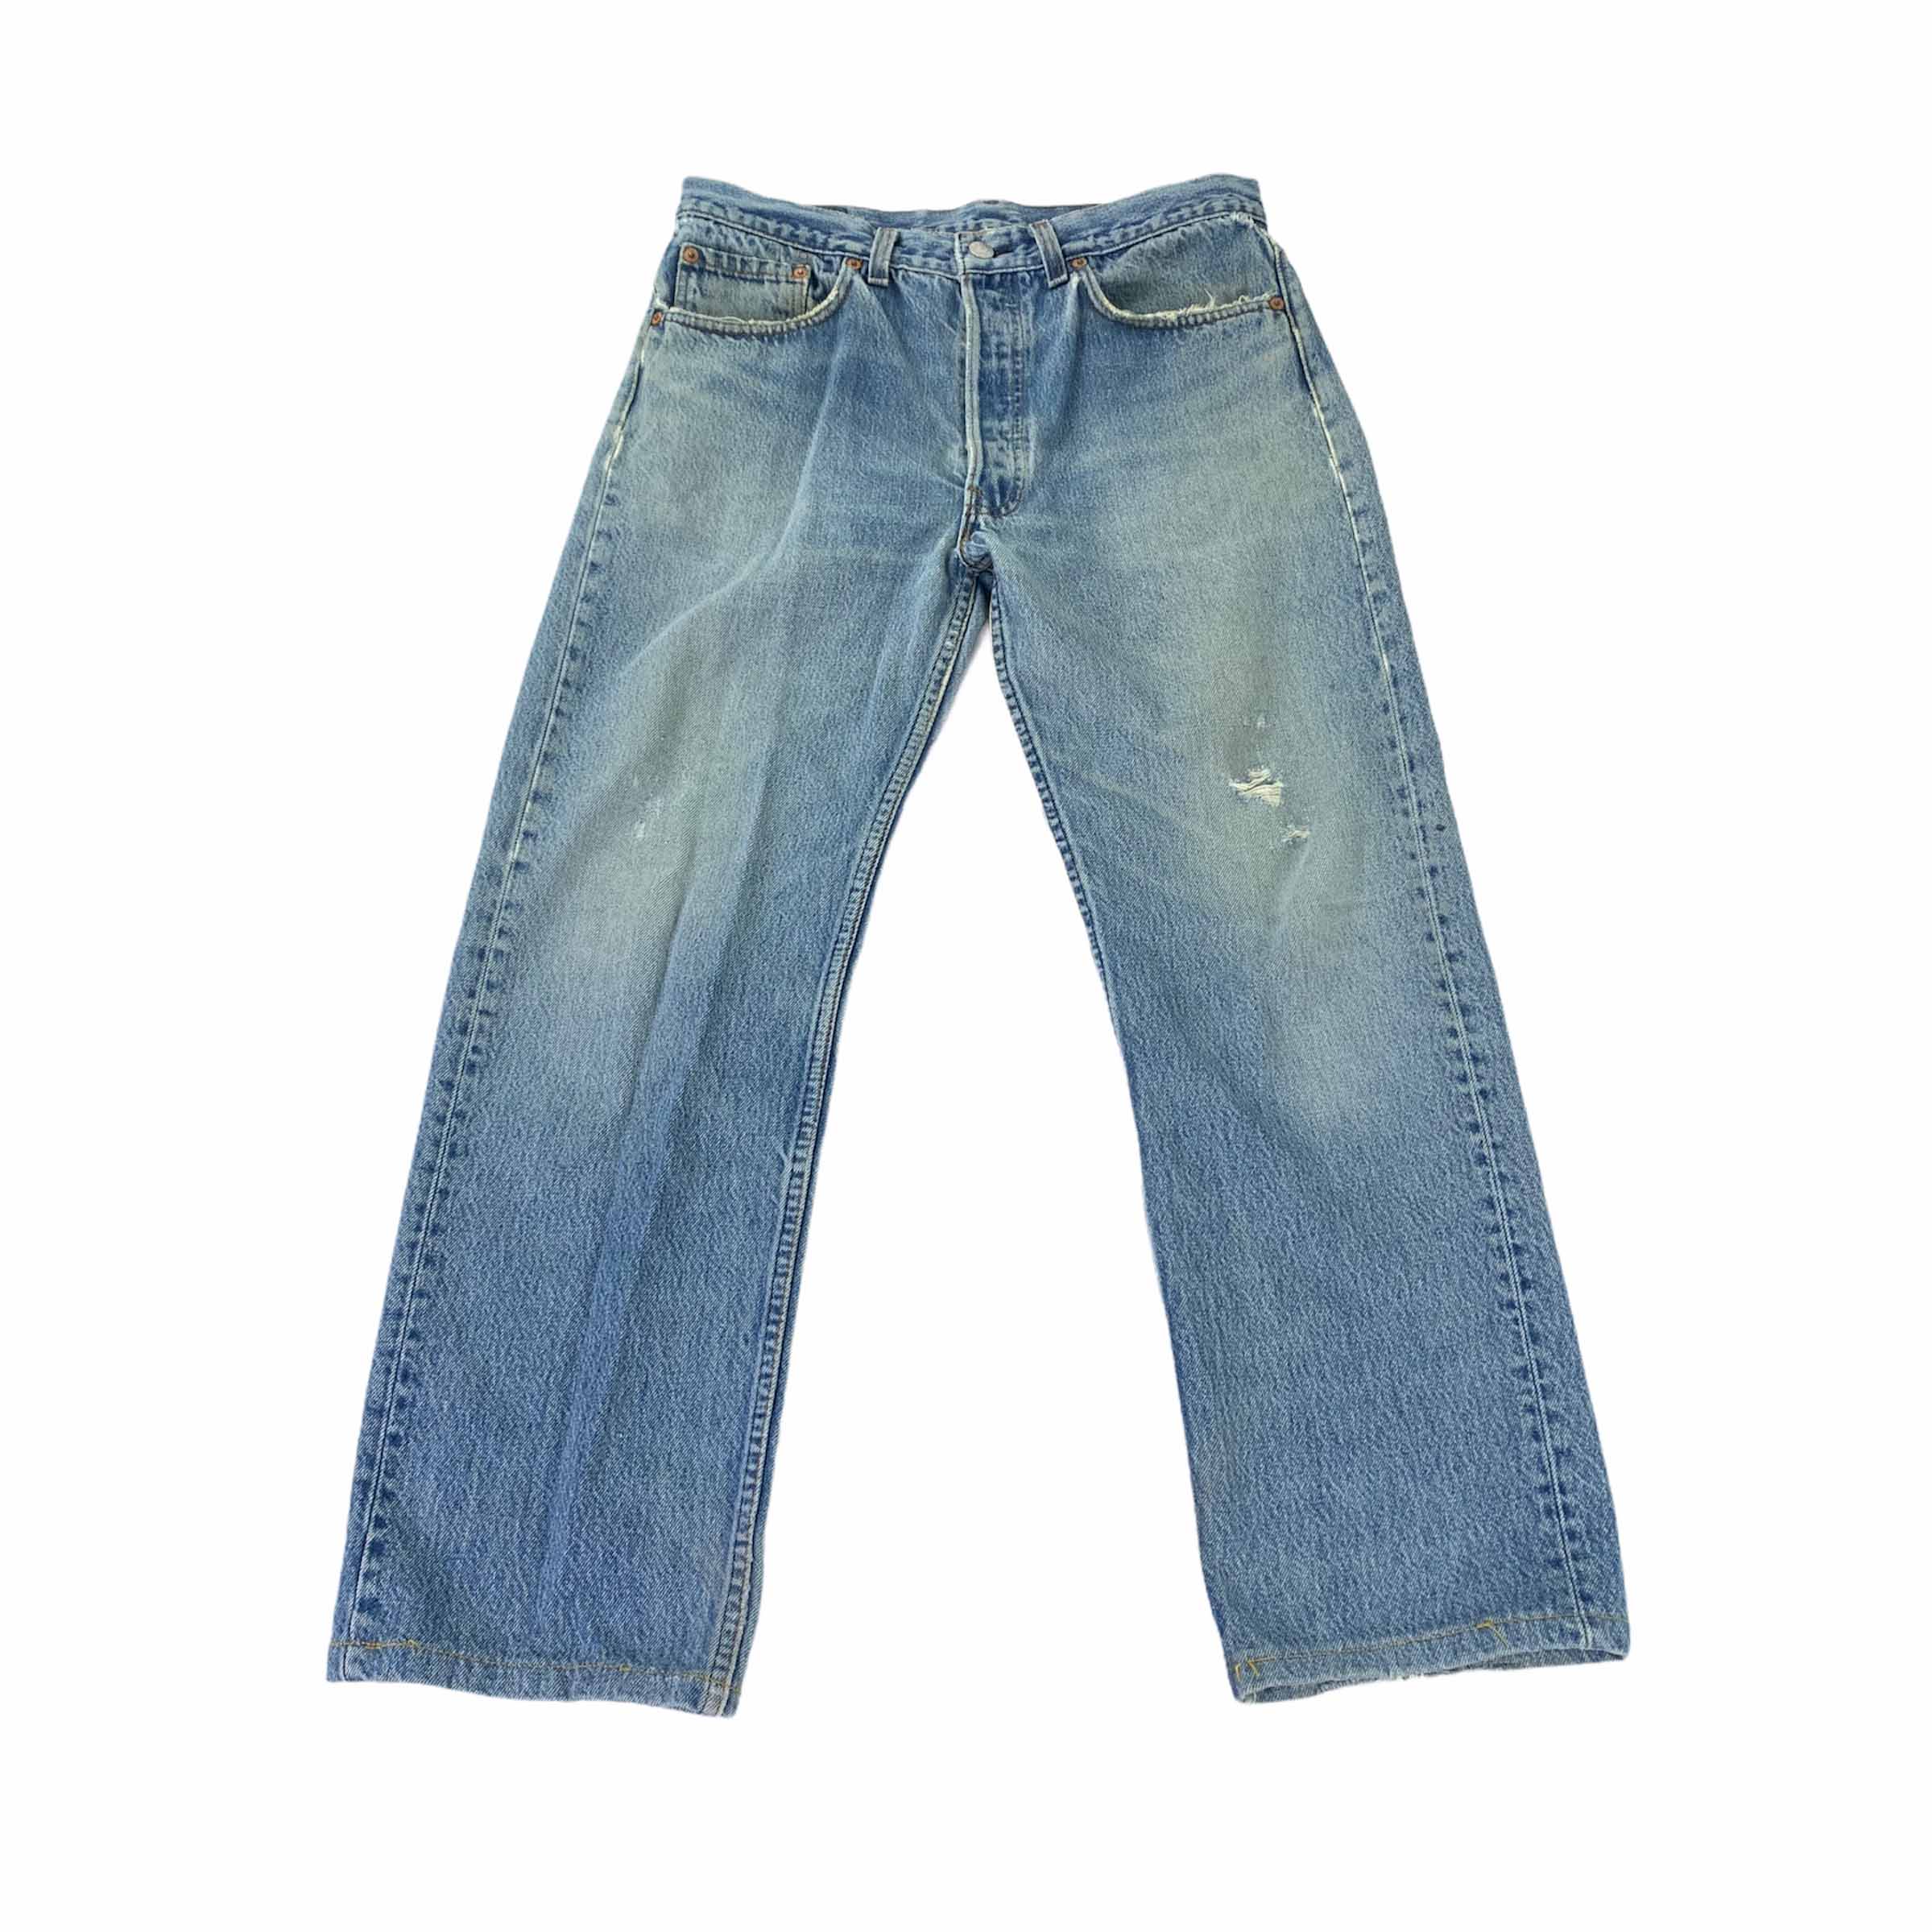 [Levis] 851 Light Jeans - Size 34/33